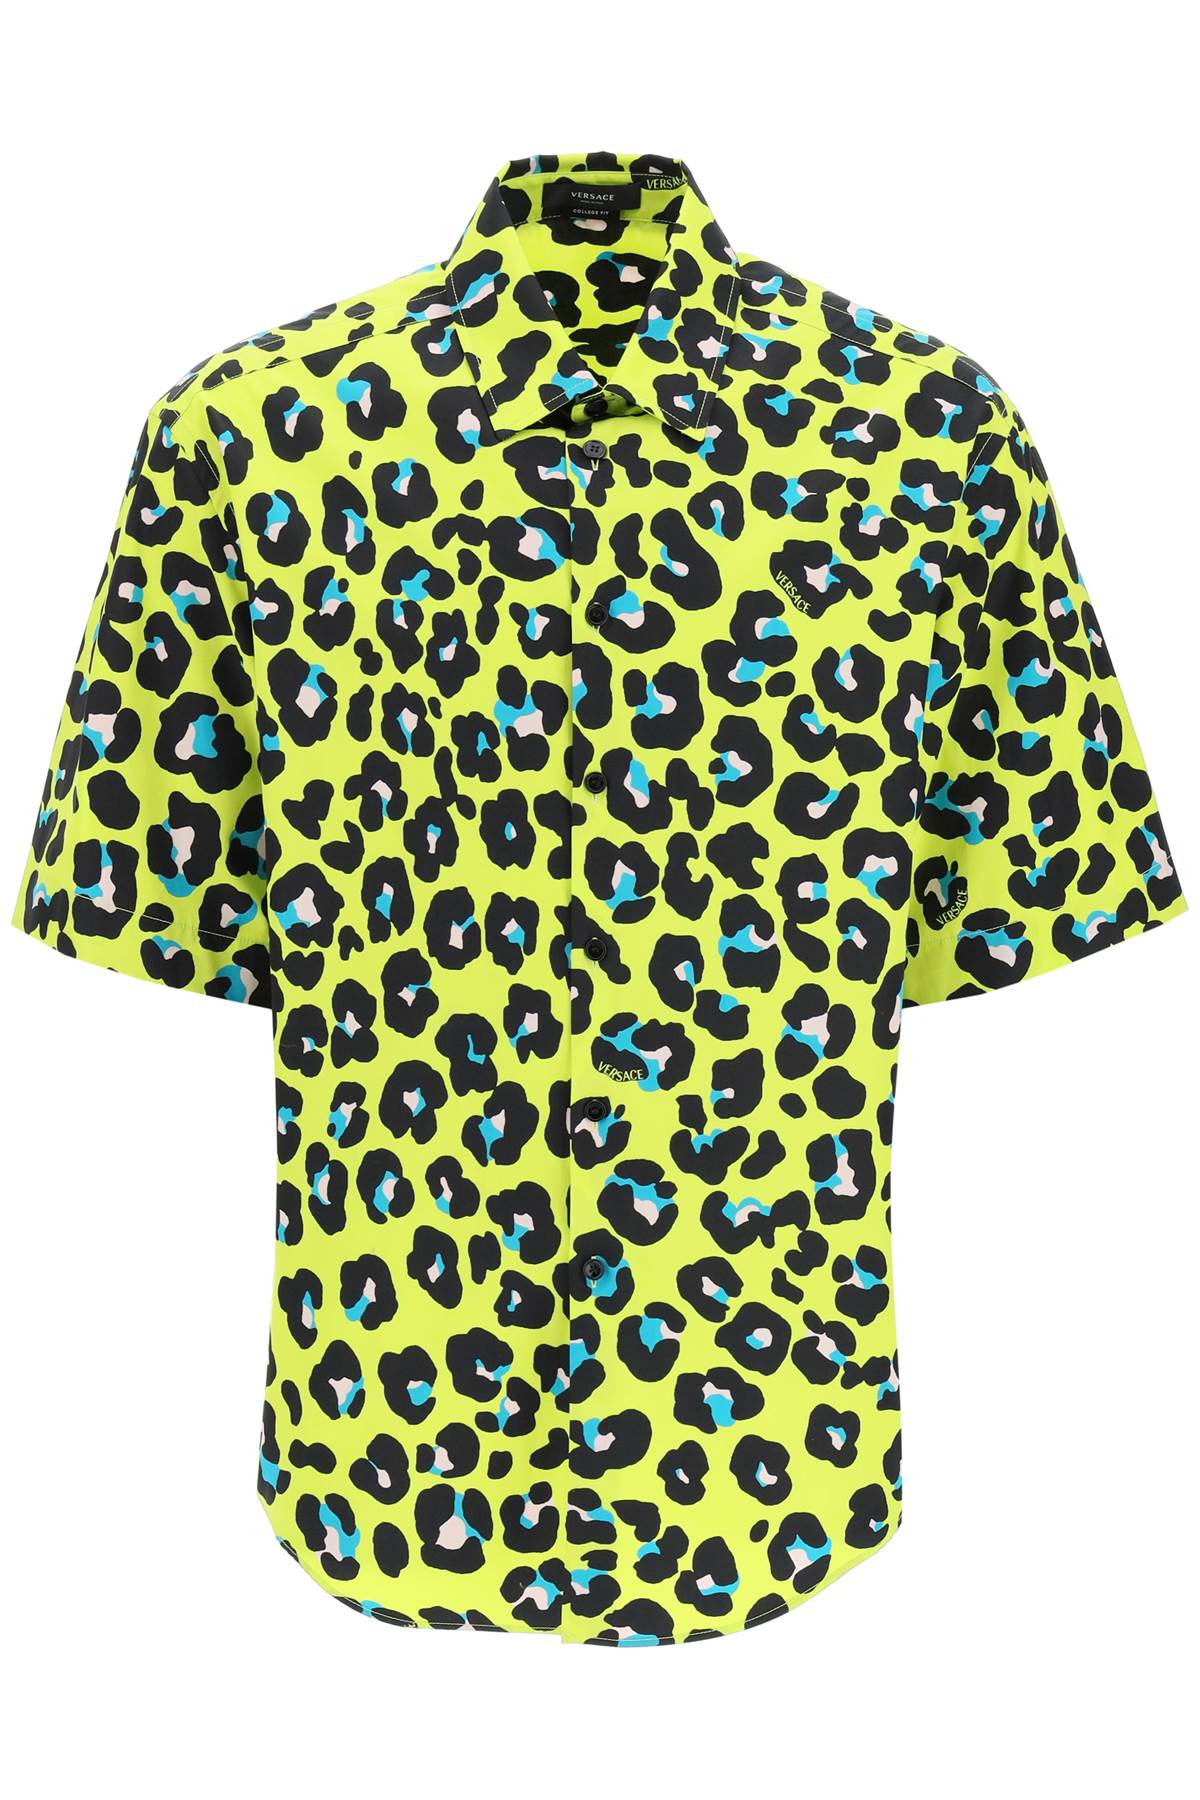 Versace Daisy Leopard Shirt